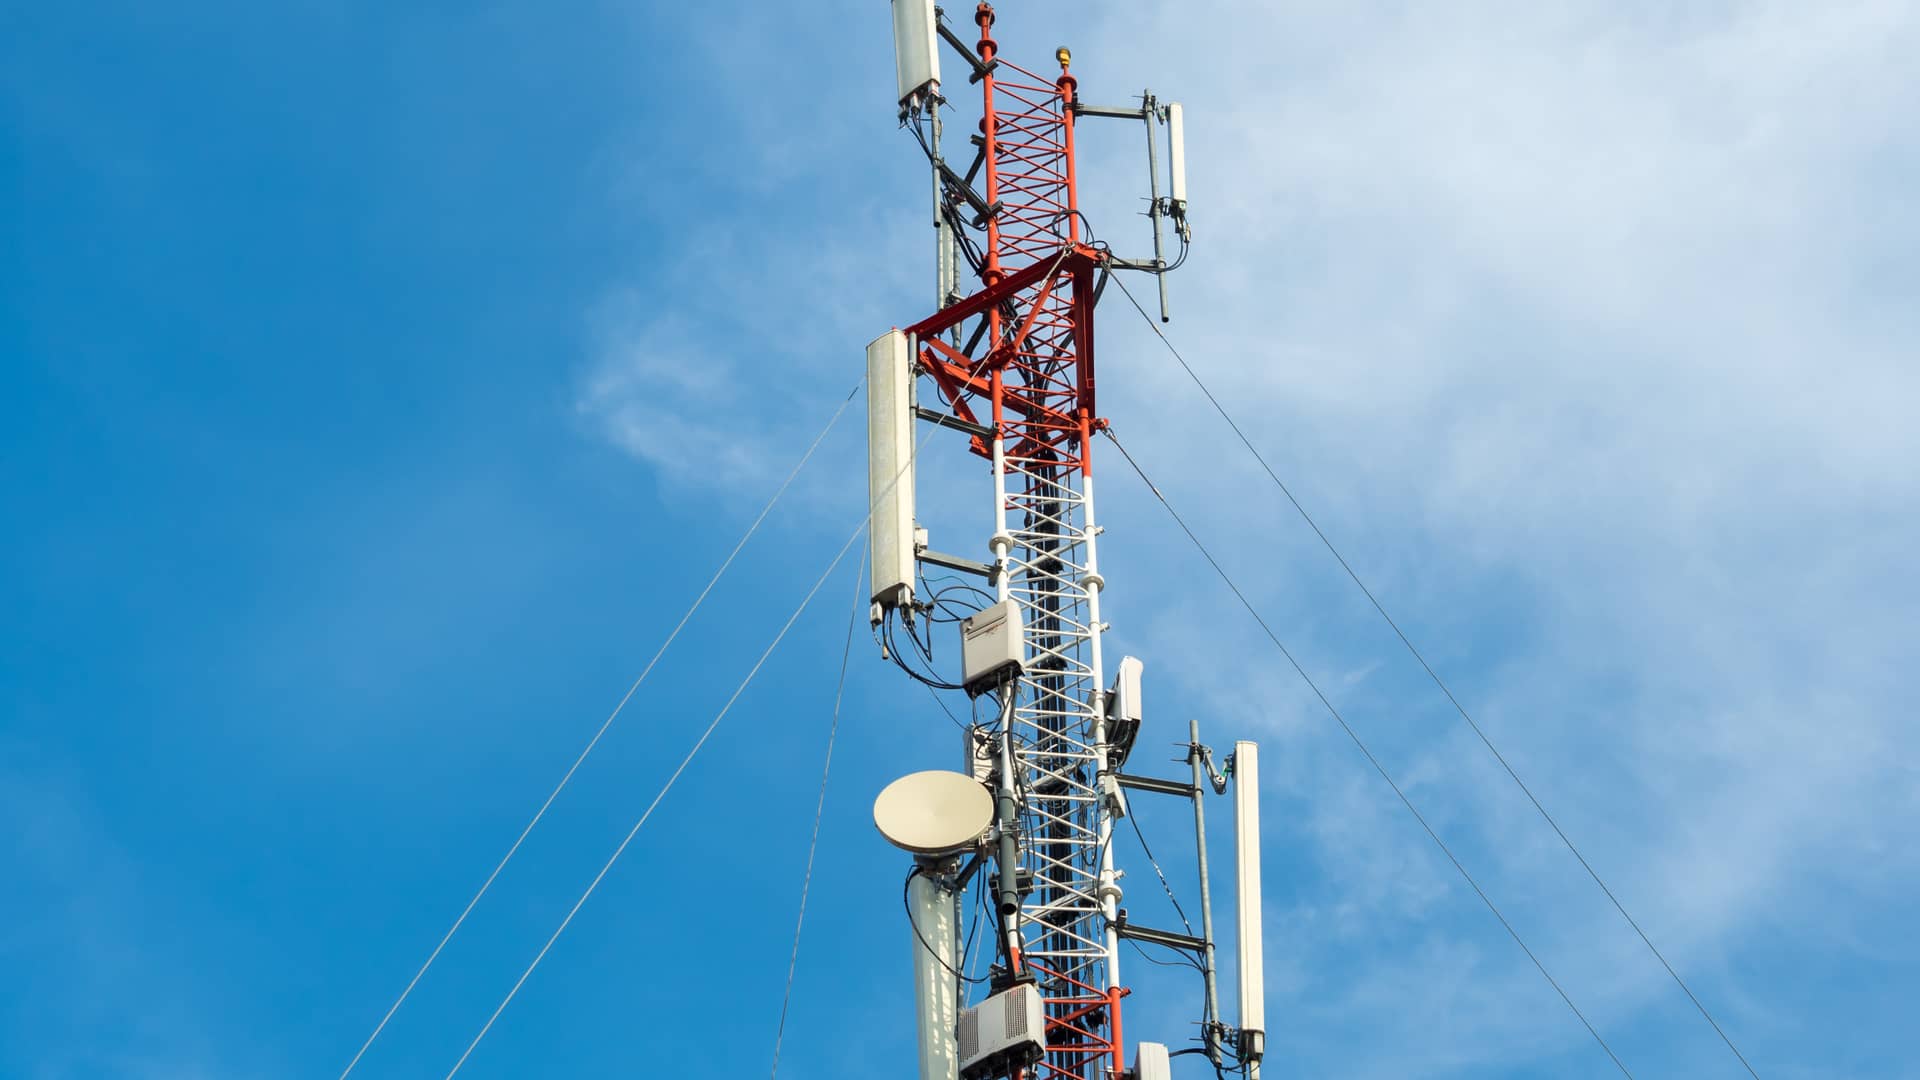 Antena direccional de telecomunicaciones de redes celulares simbolizando la cobertura de la compañía weex